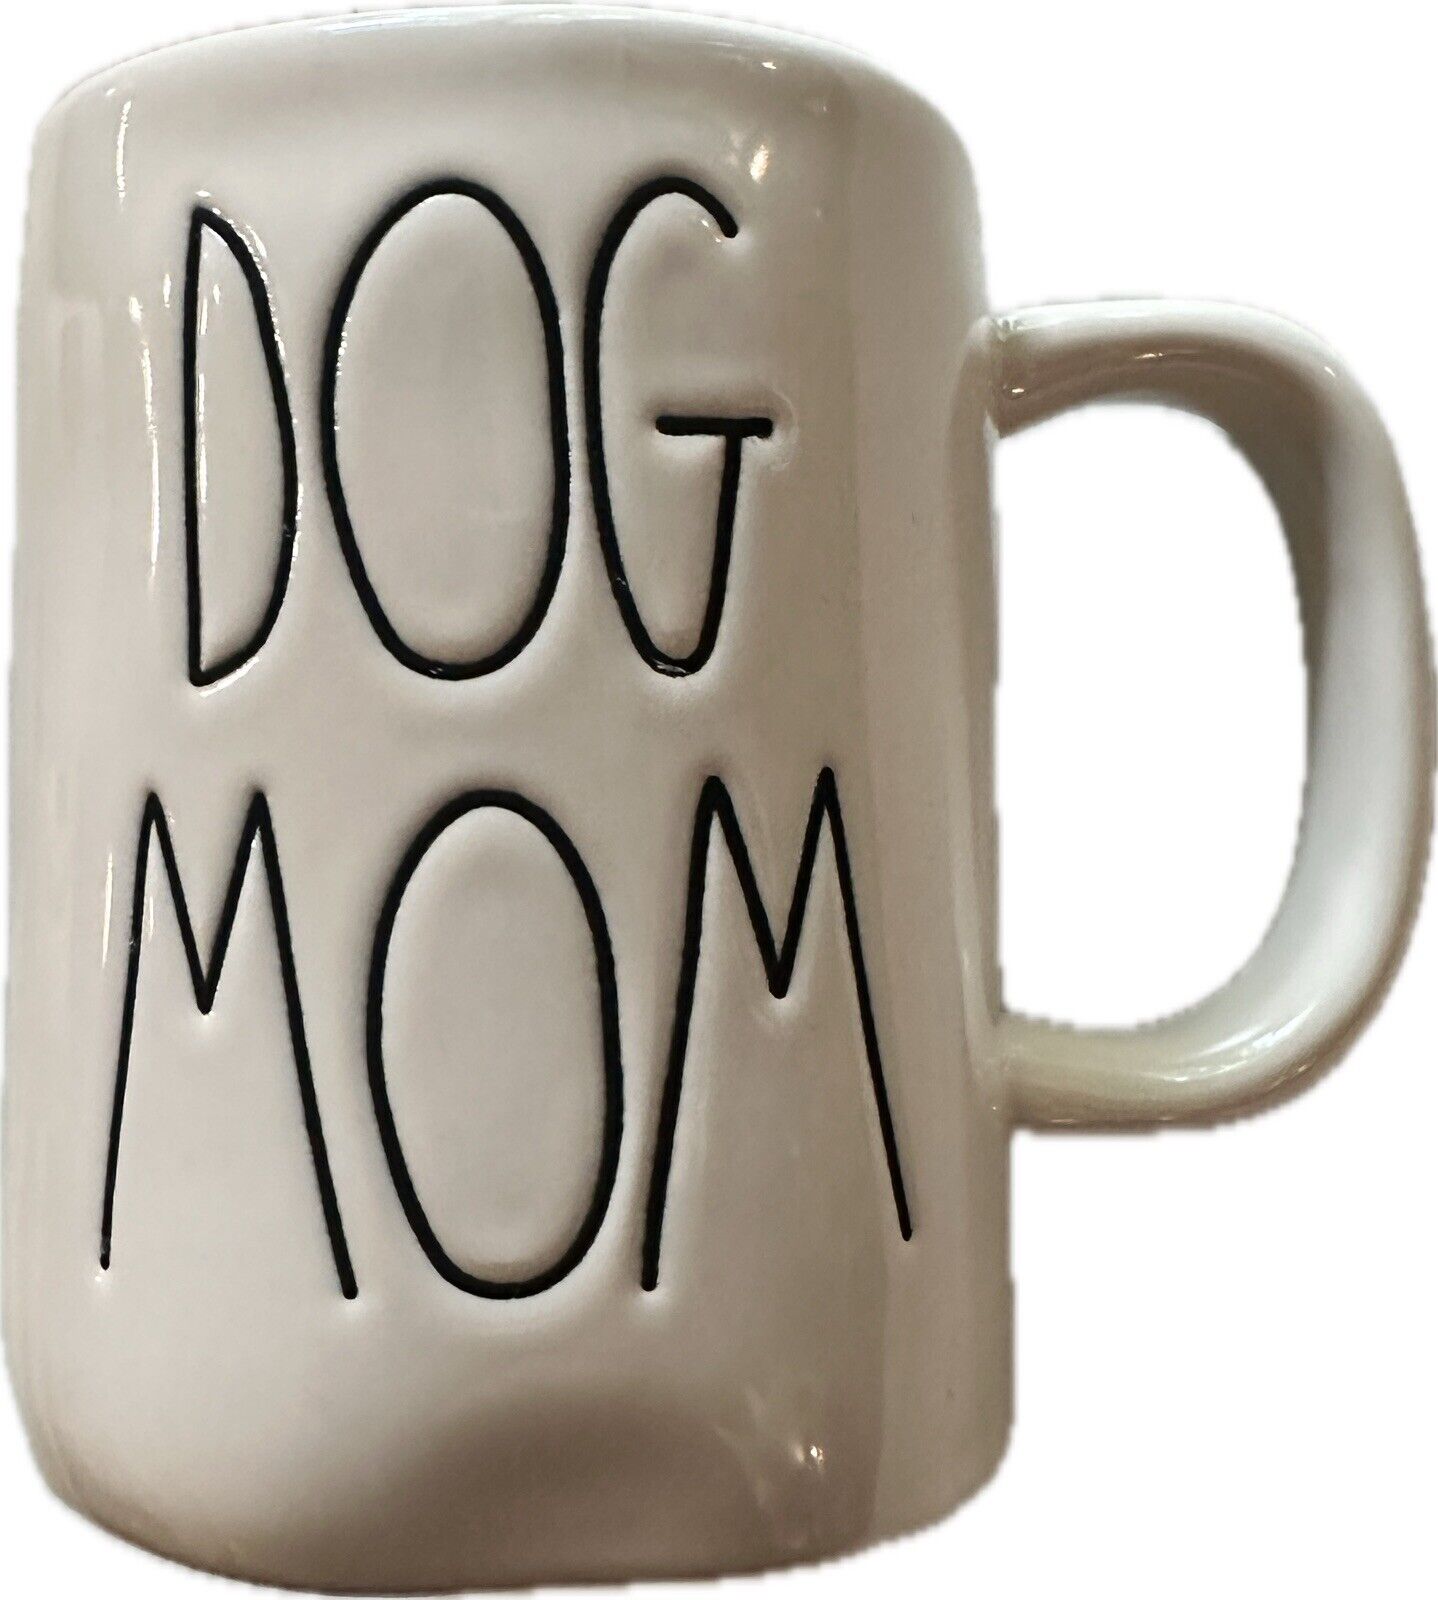 Rae Dunn Coffee Mug “Dog Mom” Artisan Collection by Magenta 200